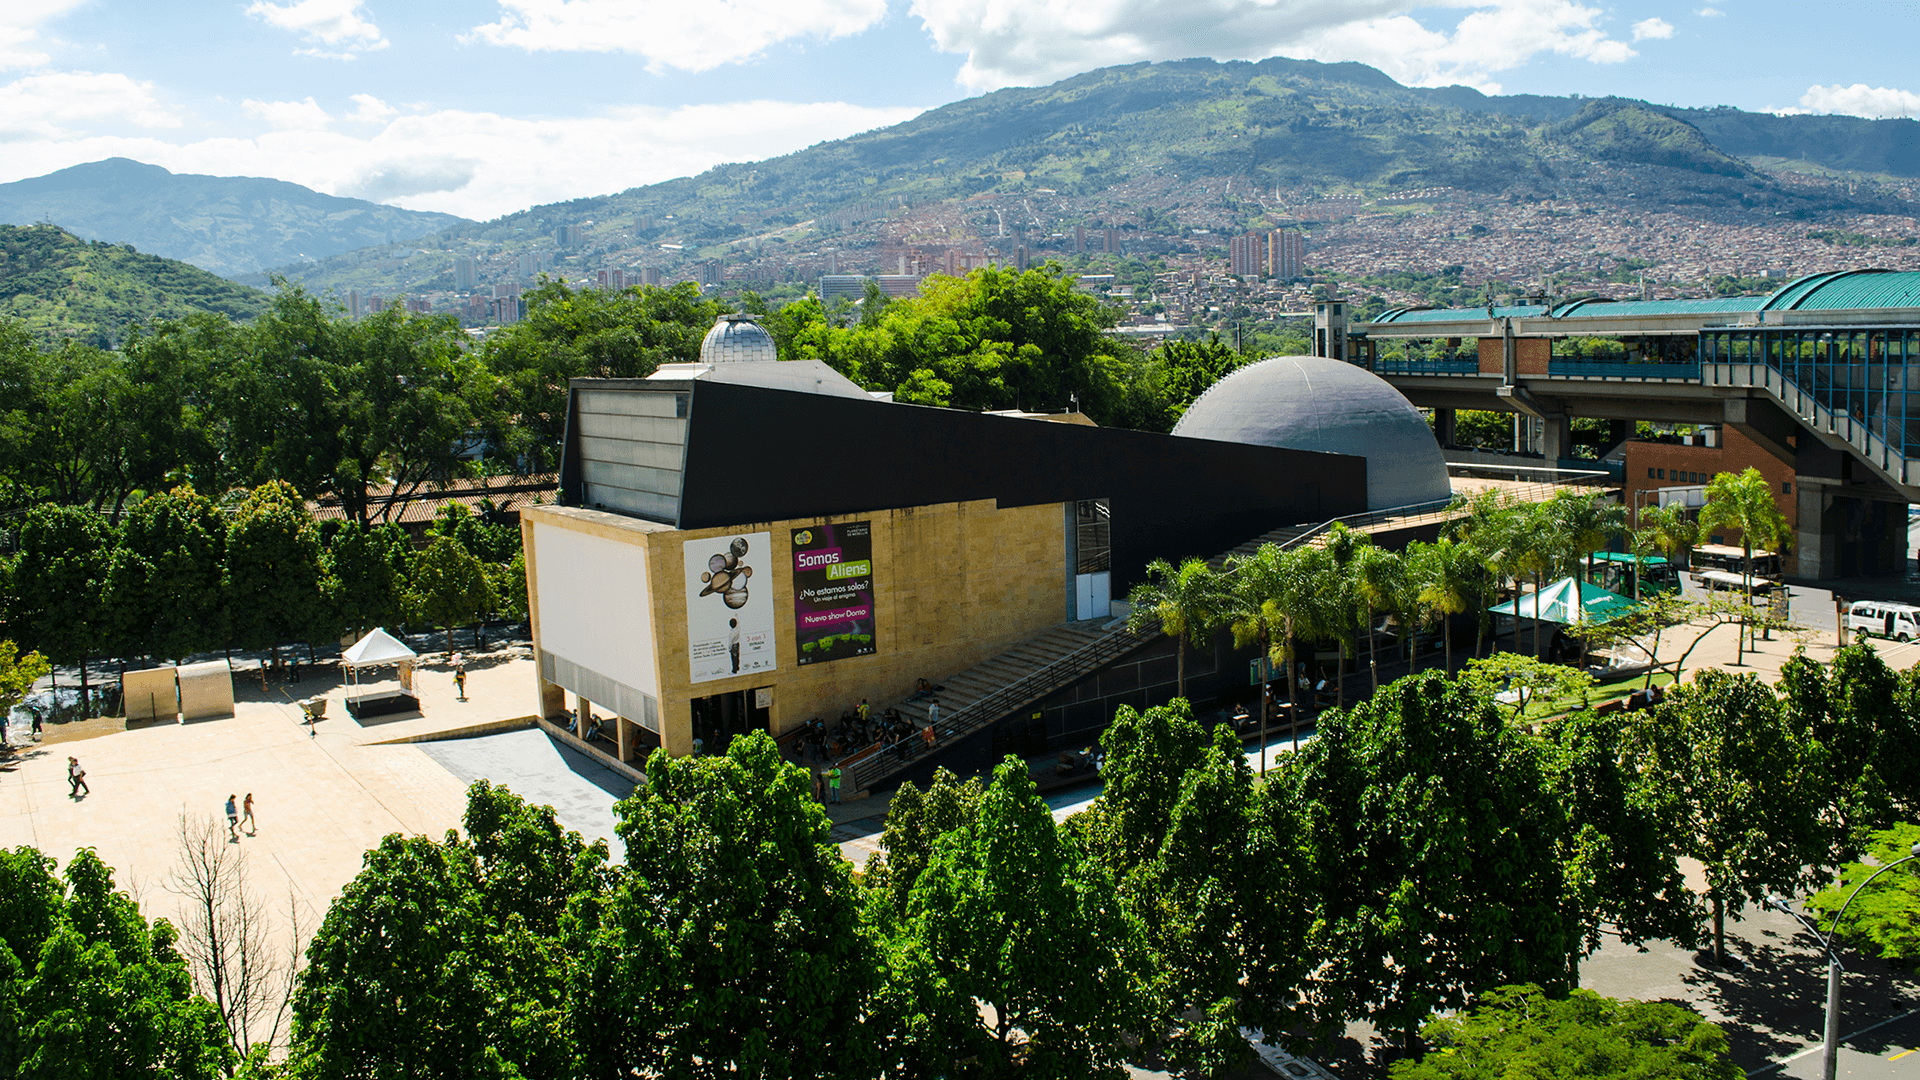 Planetario Medellin | Planetario de Medellin, Qué hacer en Medellín